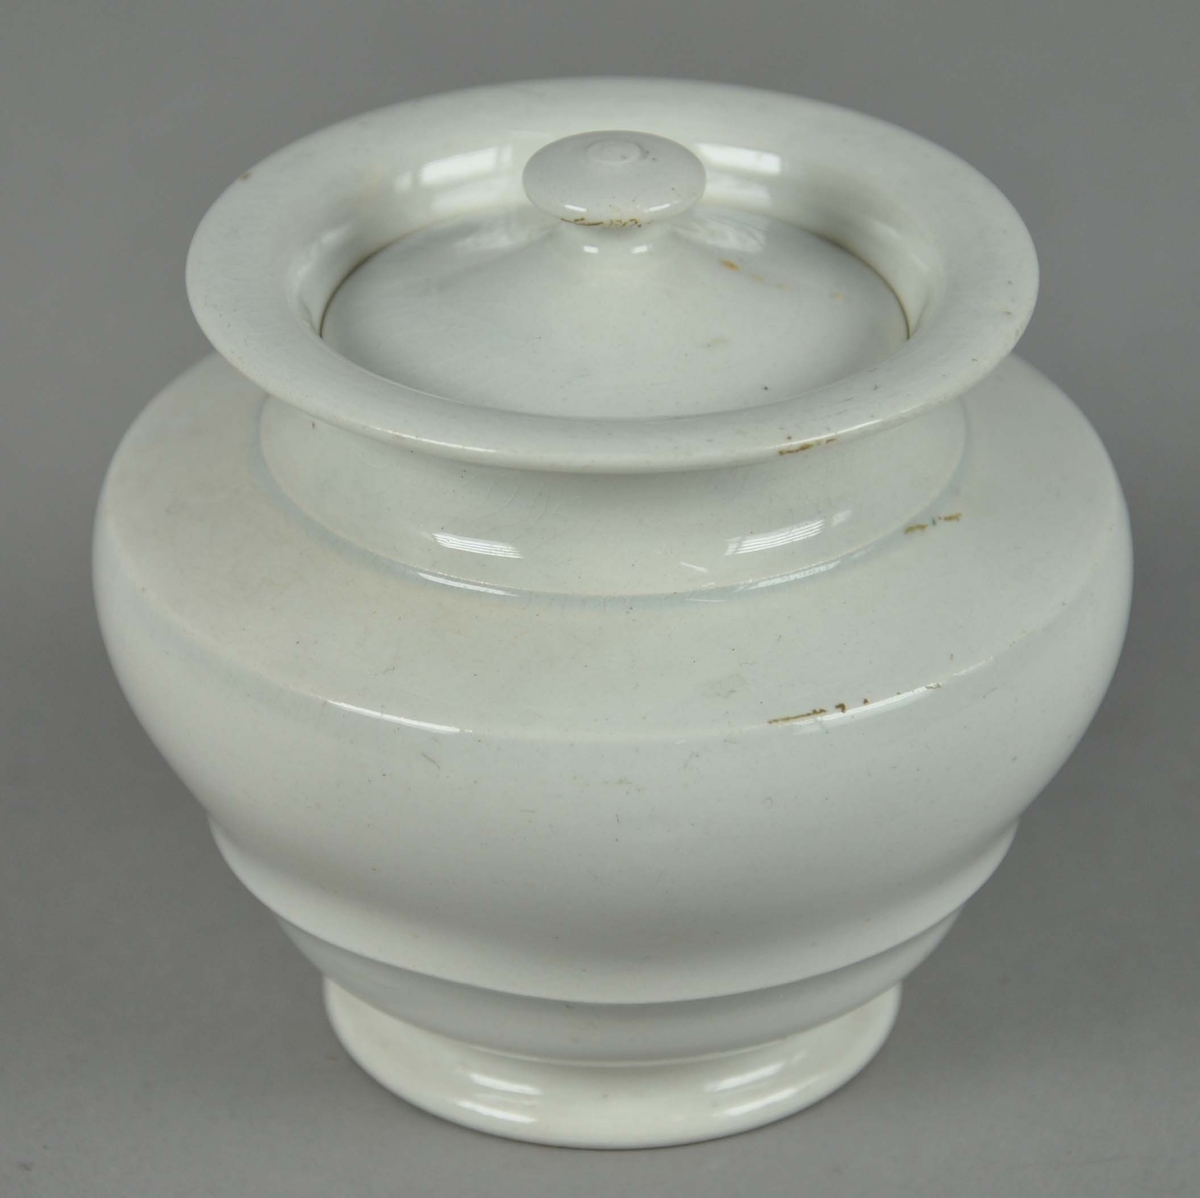 Sukkerskål av glassert keramikk, med lokk. Skålen har en rund form med utsående korpus, med profilert snitt.